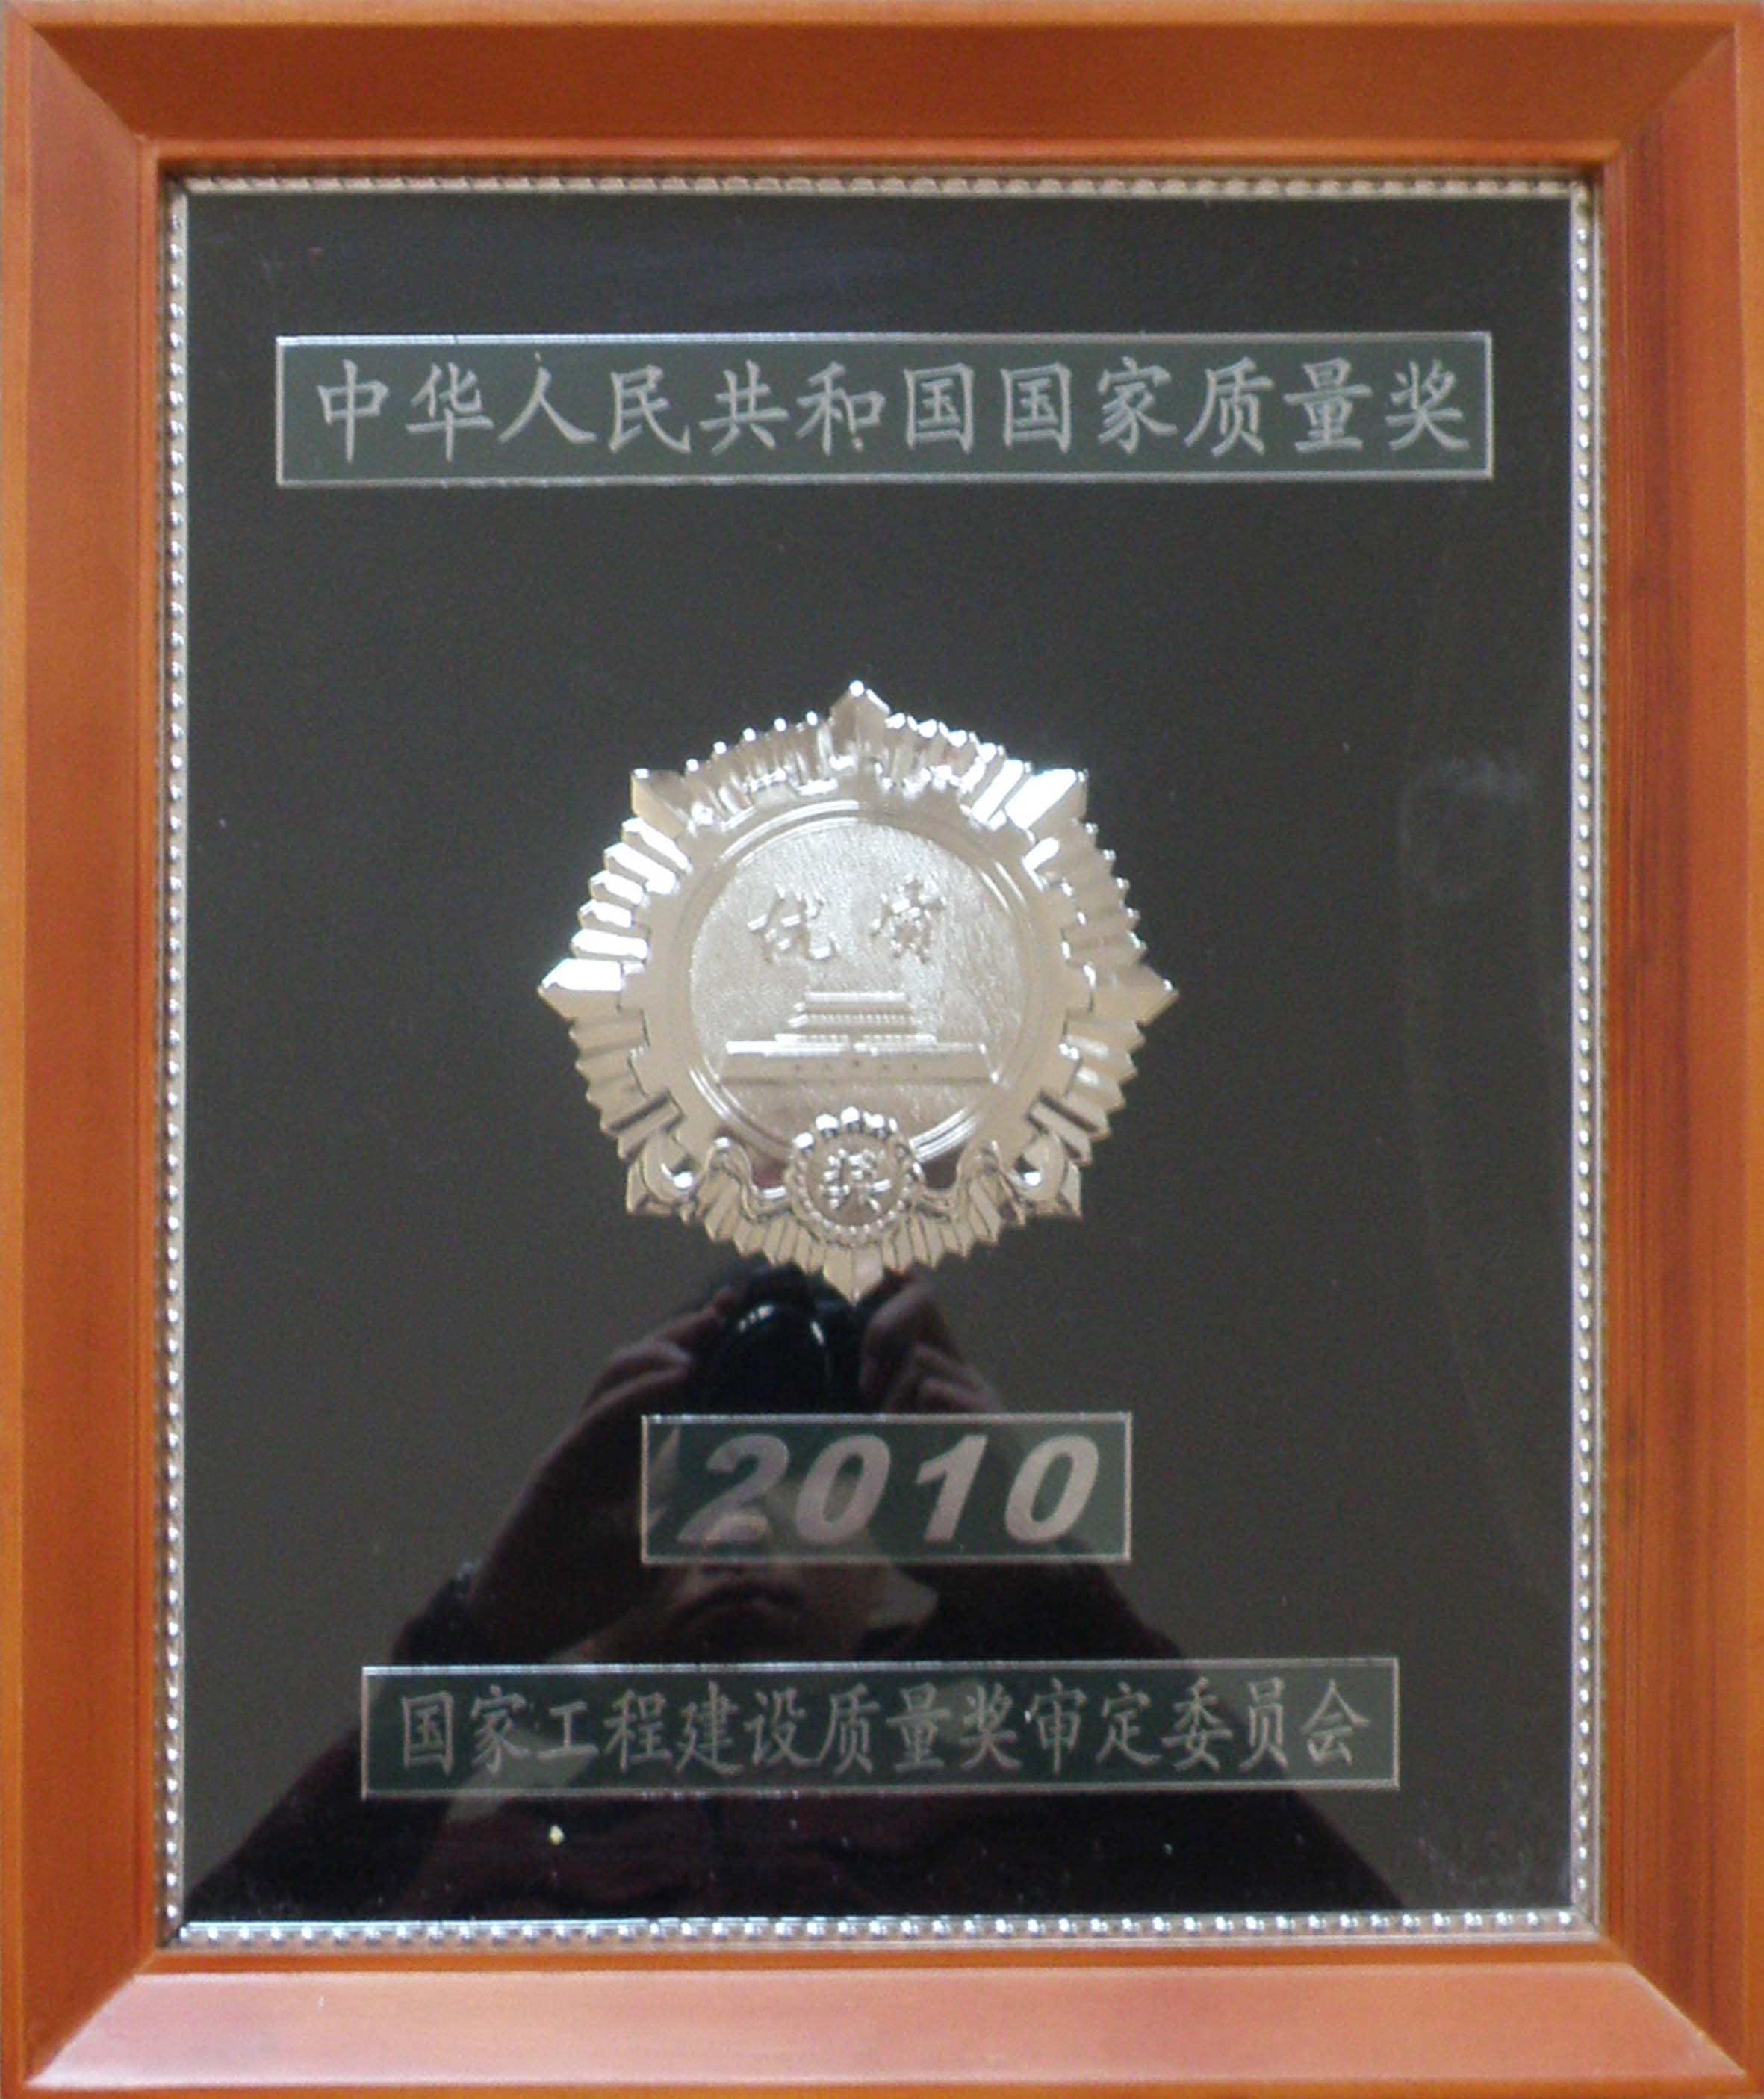 1.国家优质工程银质奖（蓝商项目）-国家工程建设质量奖审定委员会2010.12.15